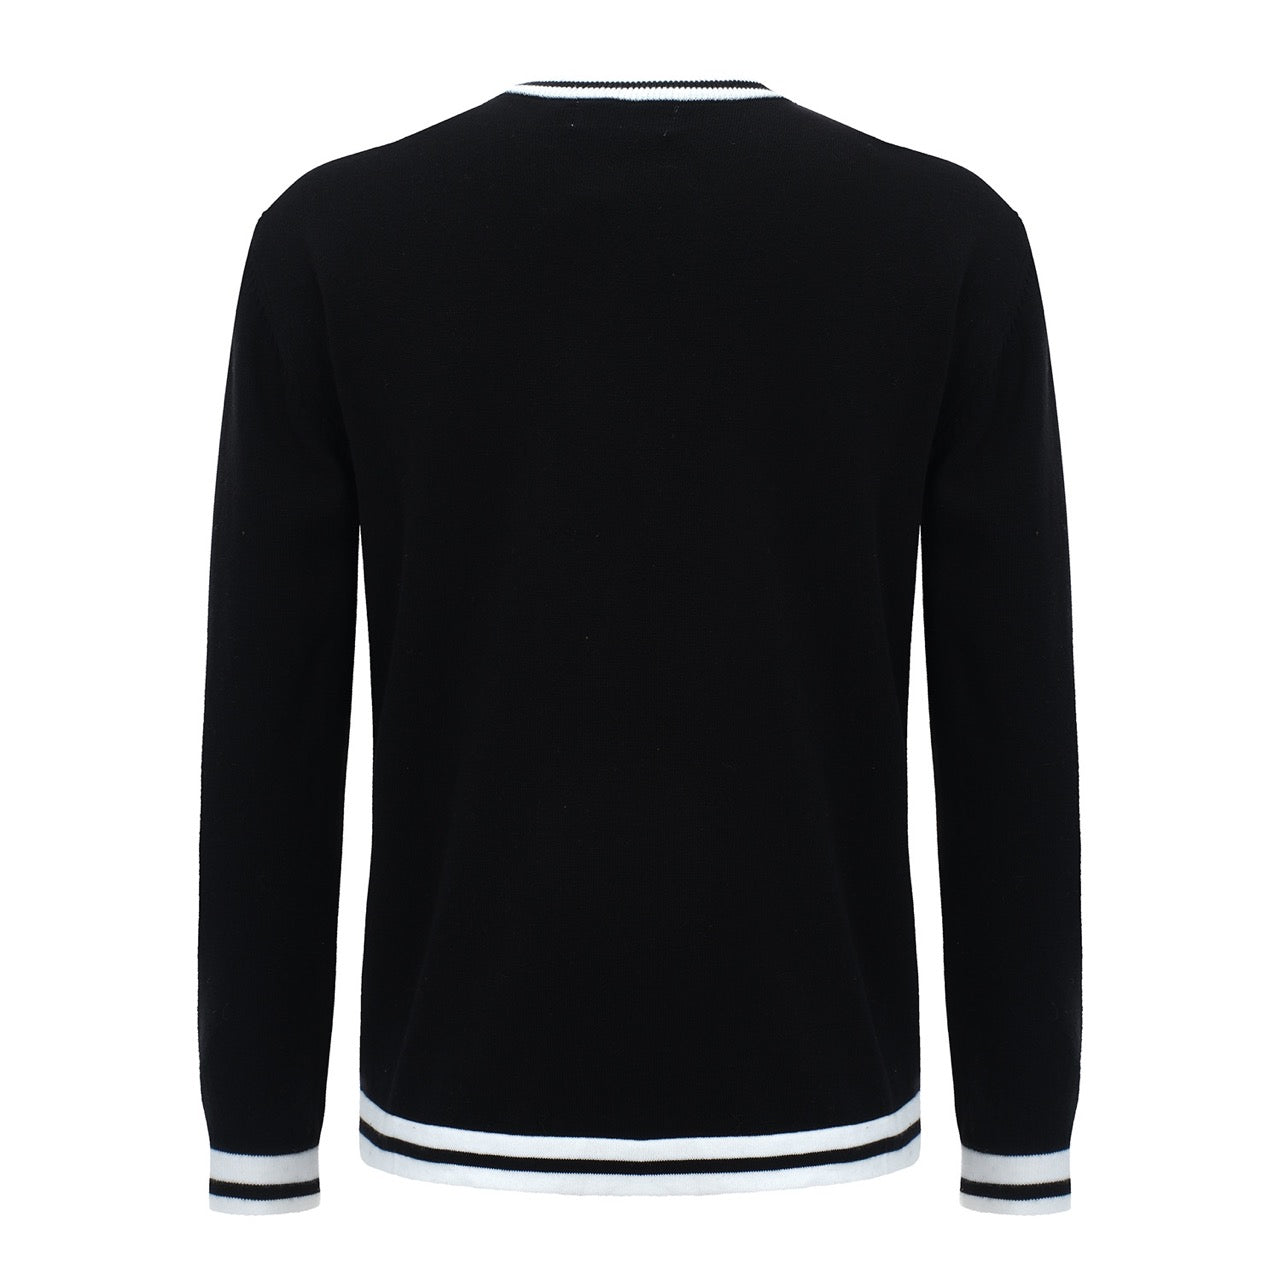 Camisetas negras de manga larga de punto estilo retro mod de los años 60 para hombre